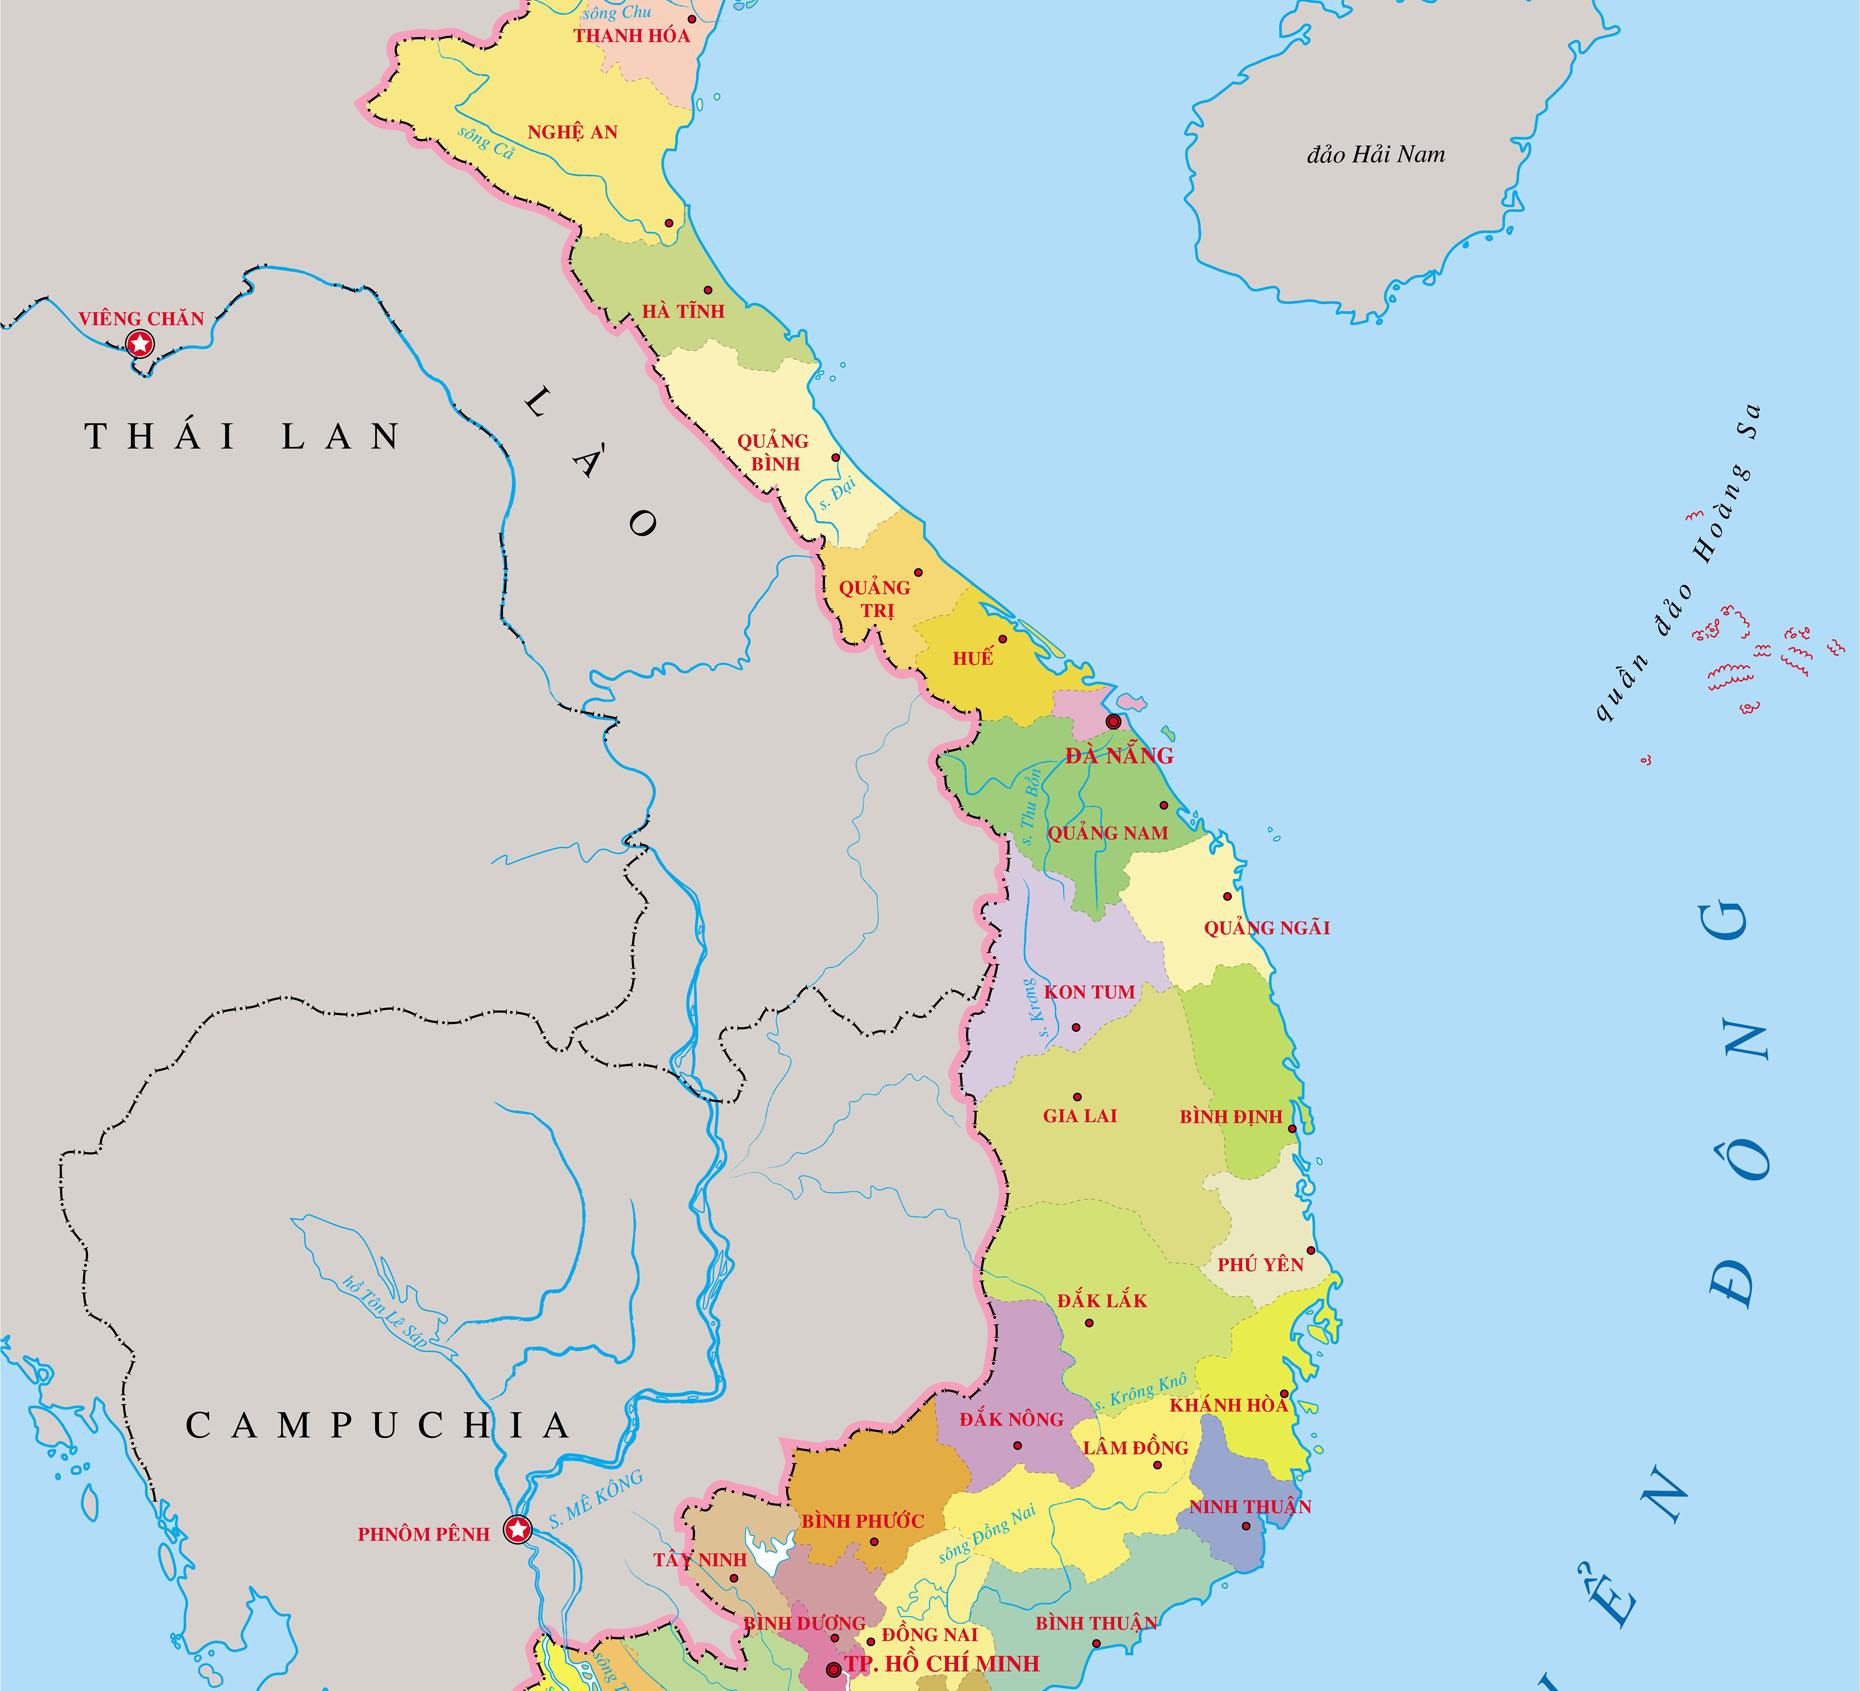 Thông tin của bản đồ miền Trung Việt Nam sẽ giúp bạn biết rõ hơn về vùng đất này như cách đi đến các địa điểm du lịch, địa danh nổi tiếng, các sản phẩm đặc trưng của miền Trung. Đừng bỏ qua cơ hội này để có chuyến đi du lịch tuyệt vời nhất.